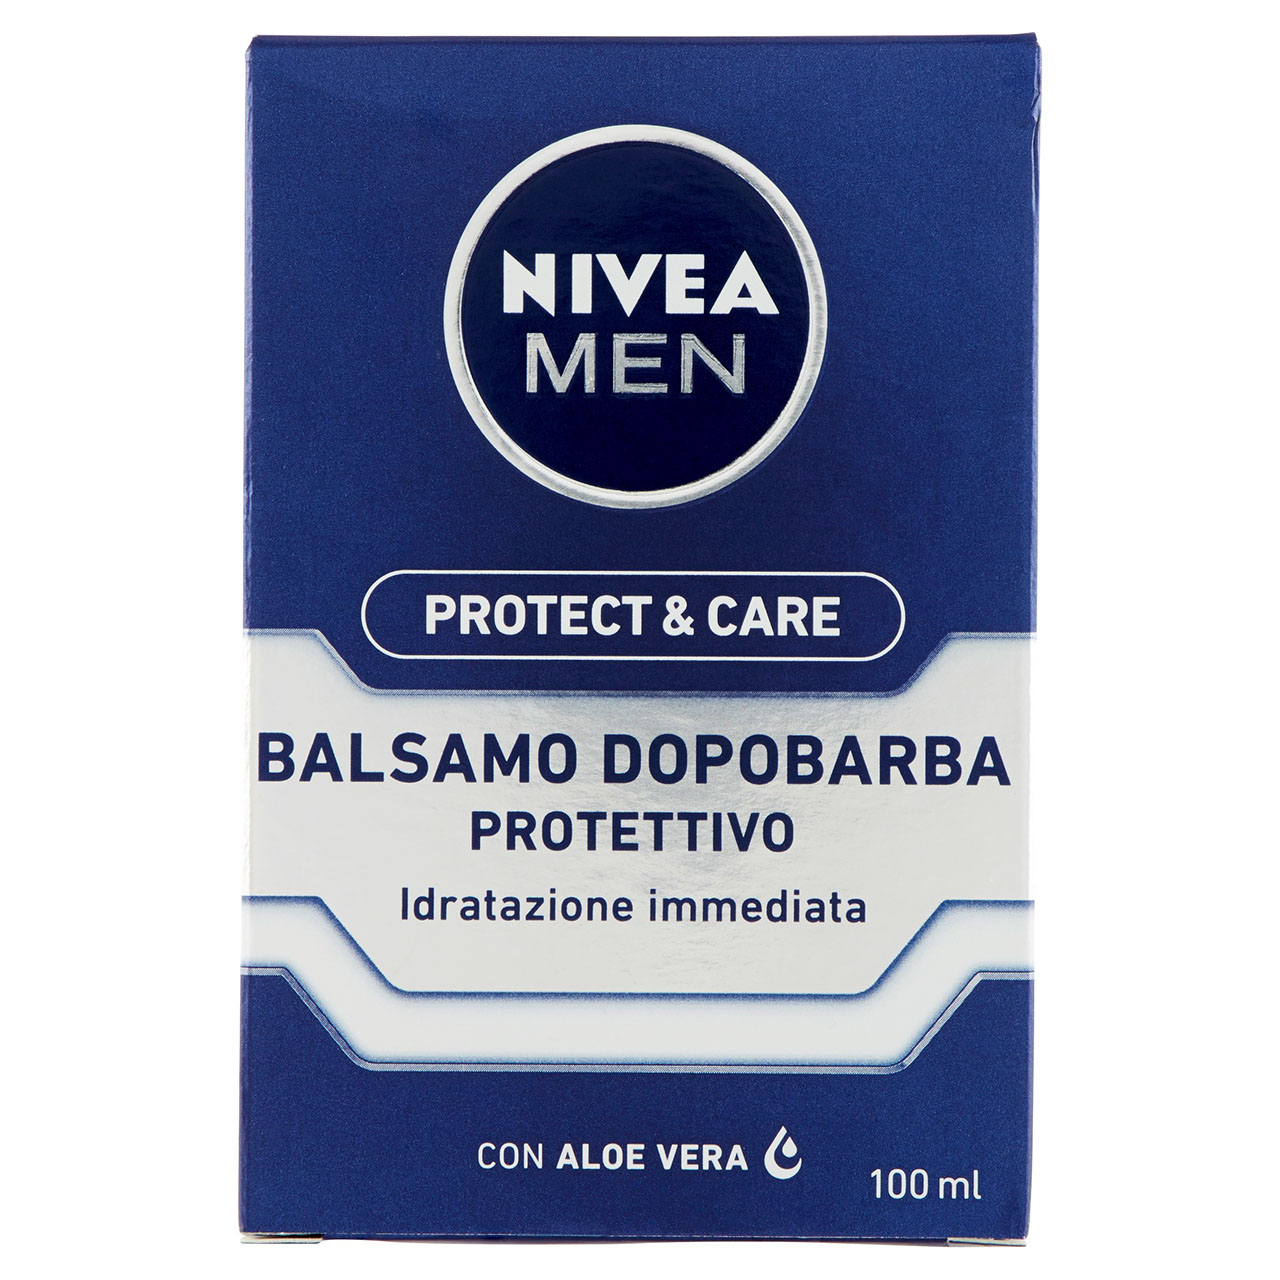 Nivea Men Protect e Care Balsamo Dopobarba